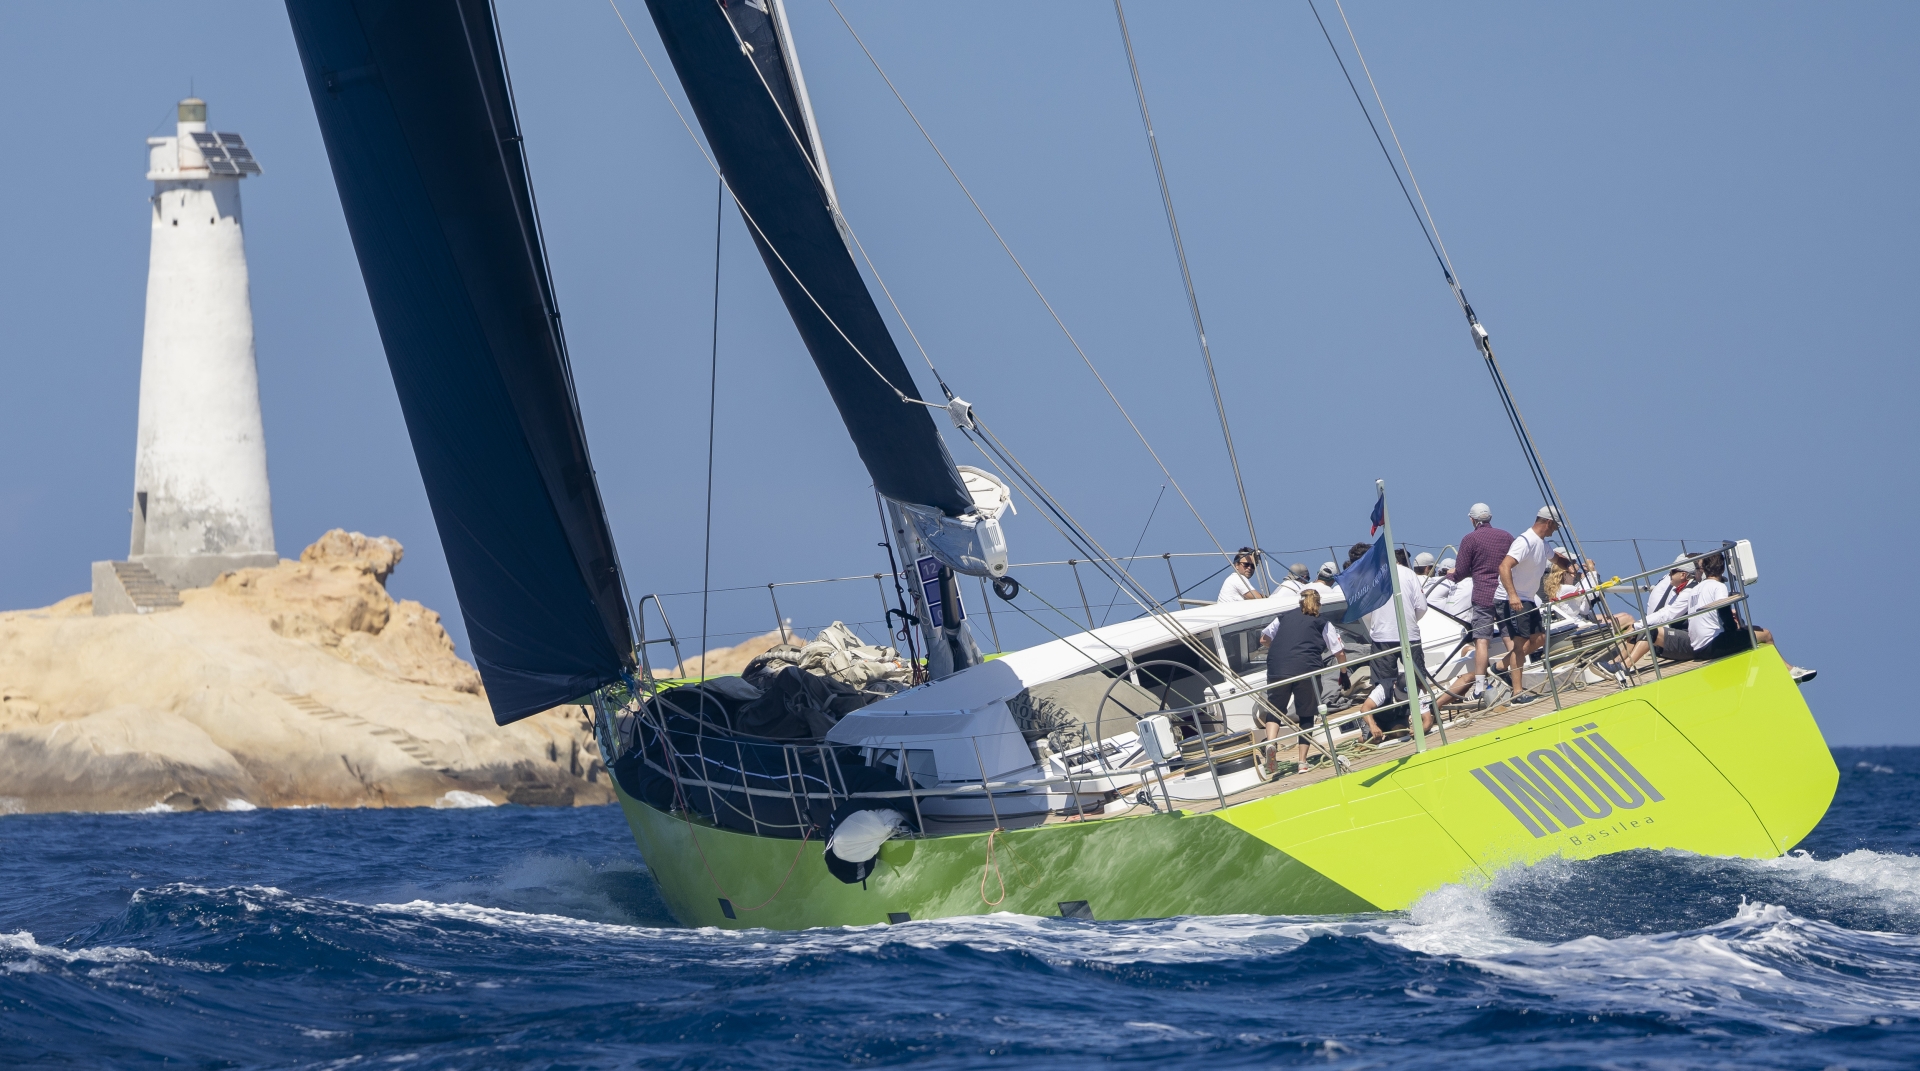 Giorgio Armani Superyacht Regatta secondo giorno: la Sardegna offre il suo meglio. - NEWS - Yacht Club Costa Smeralda